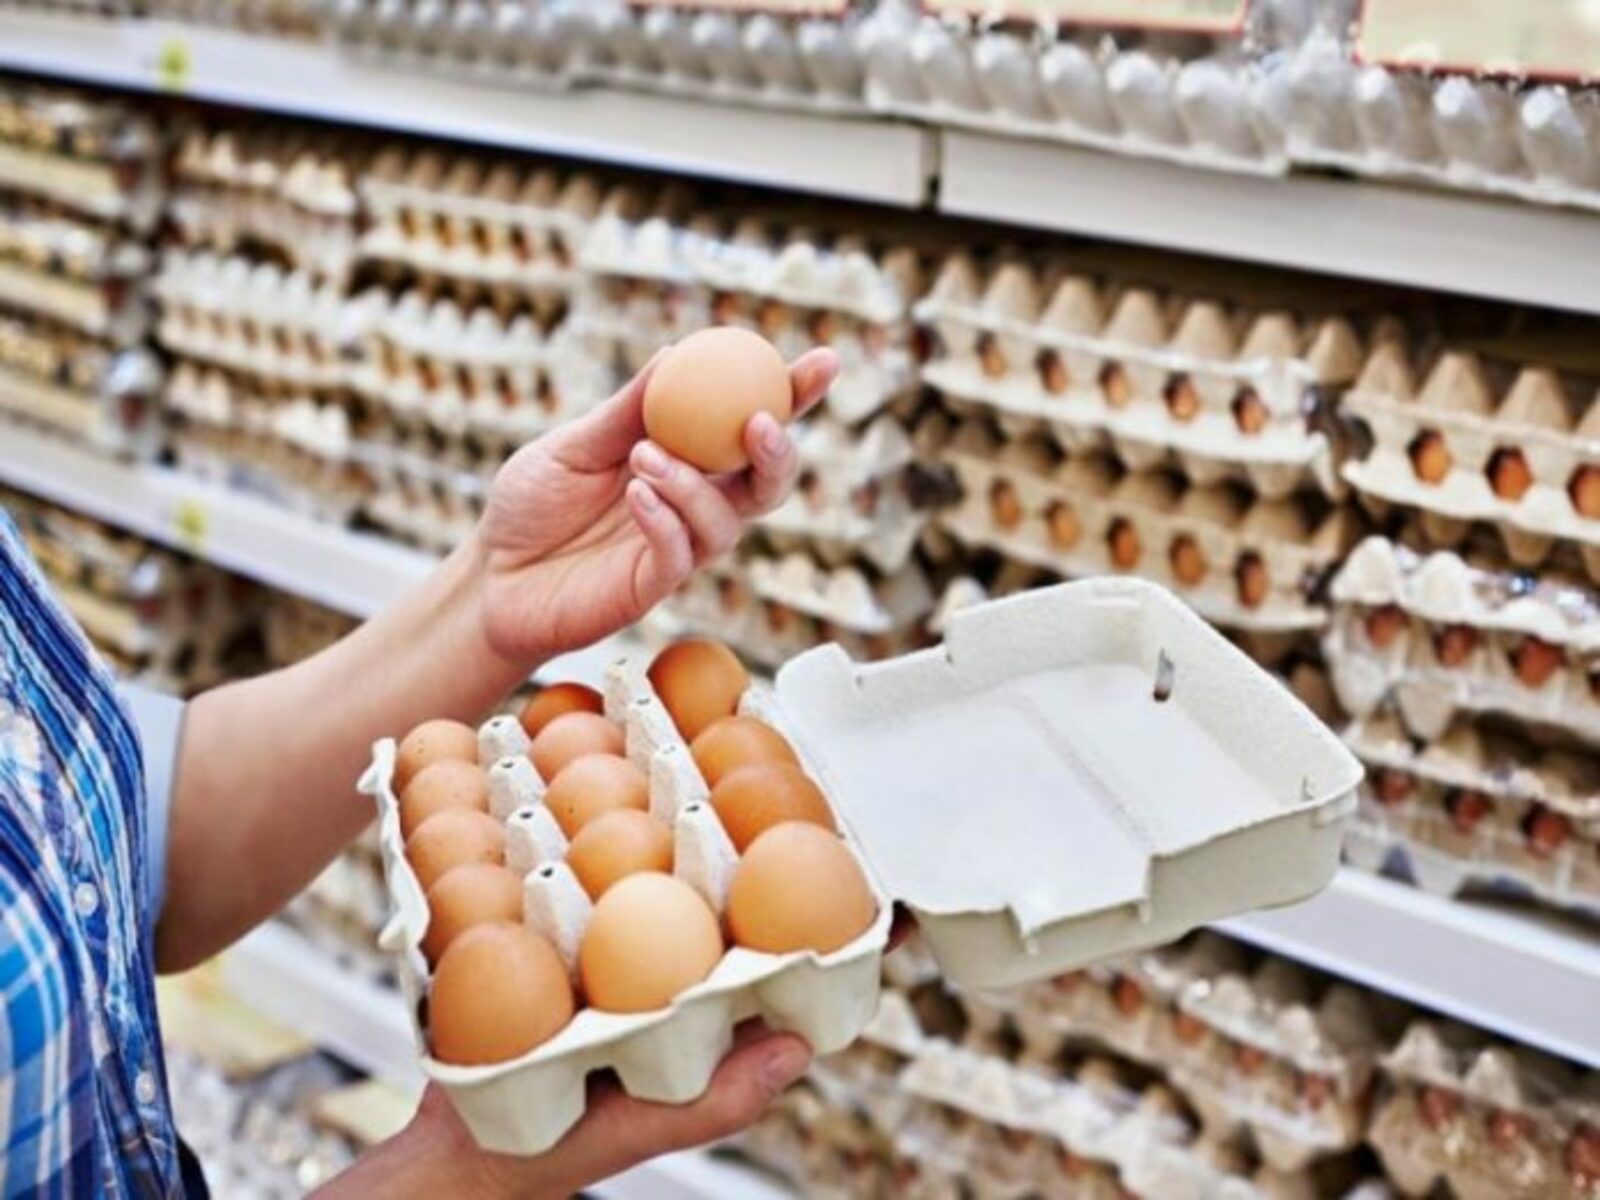 ФАС России возбудила дела в отношении четырёх производителей яиц